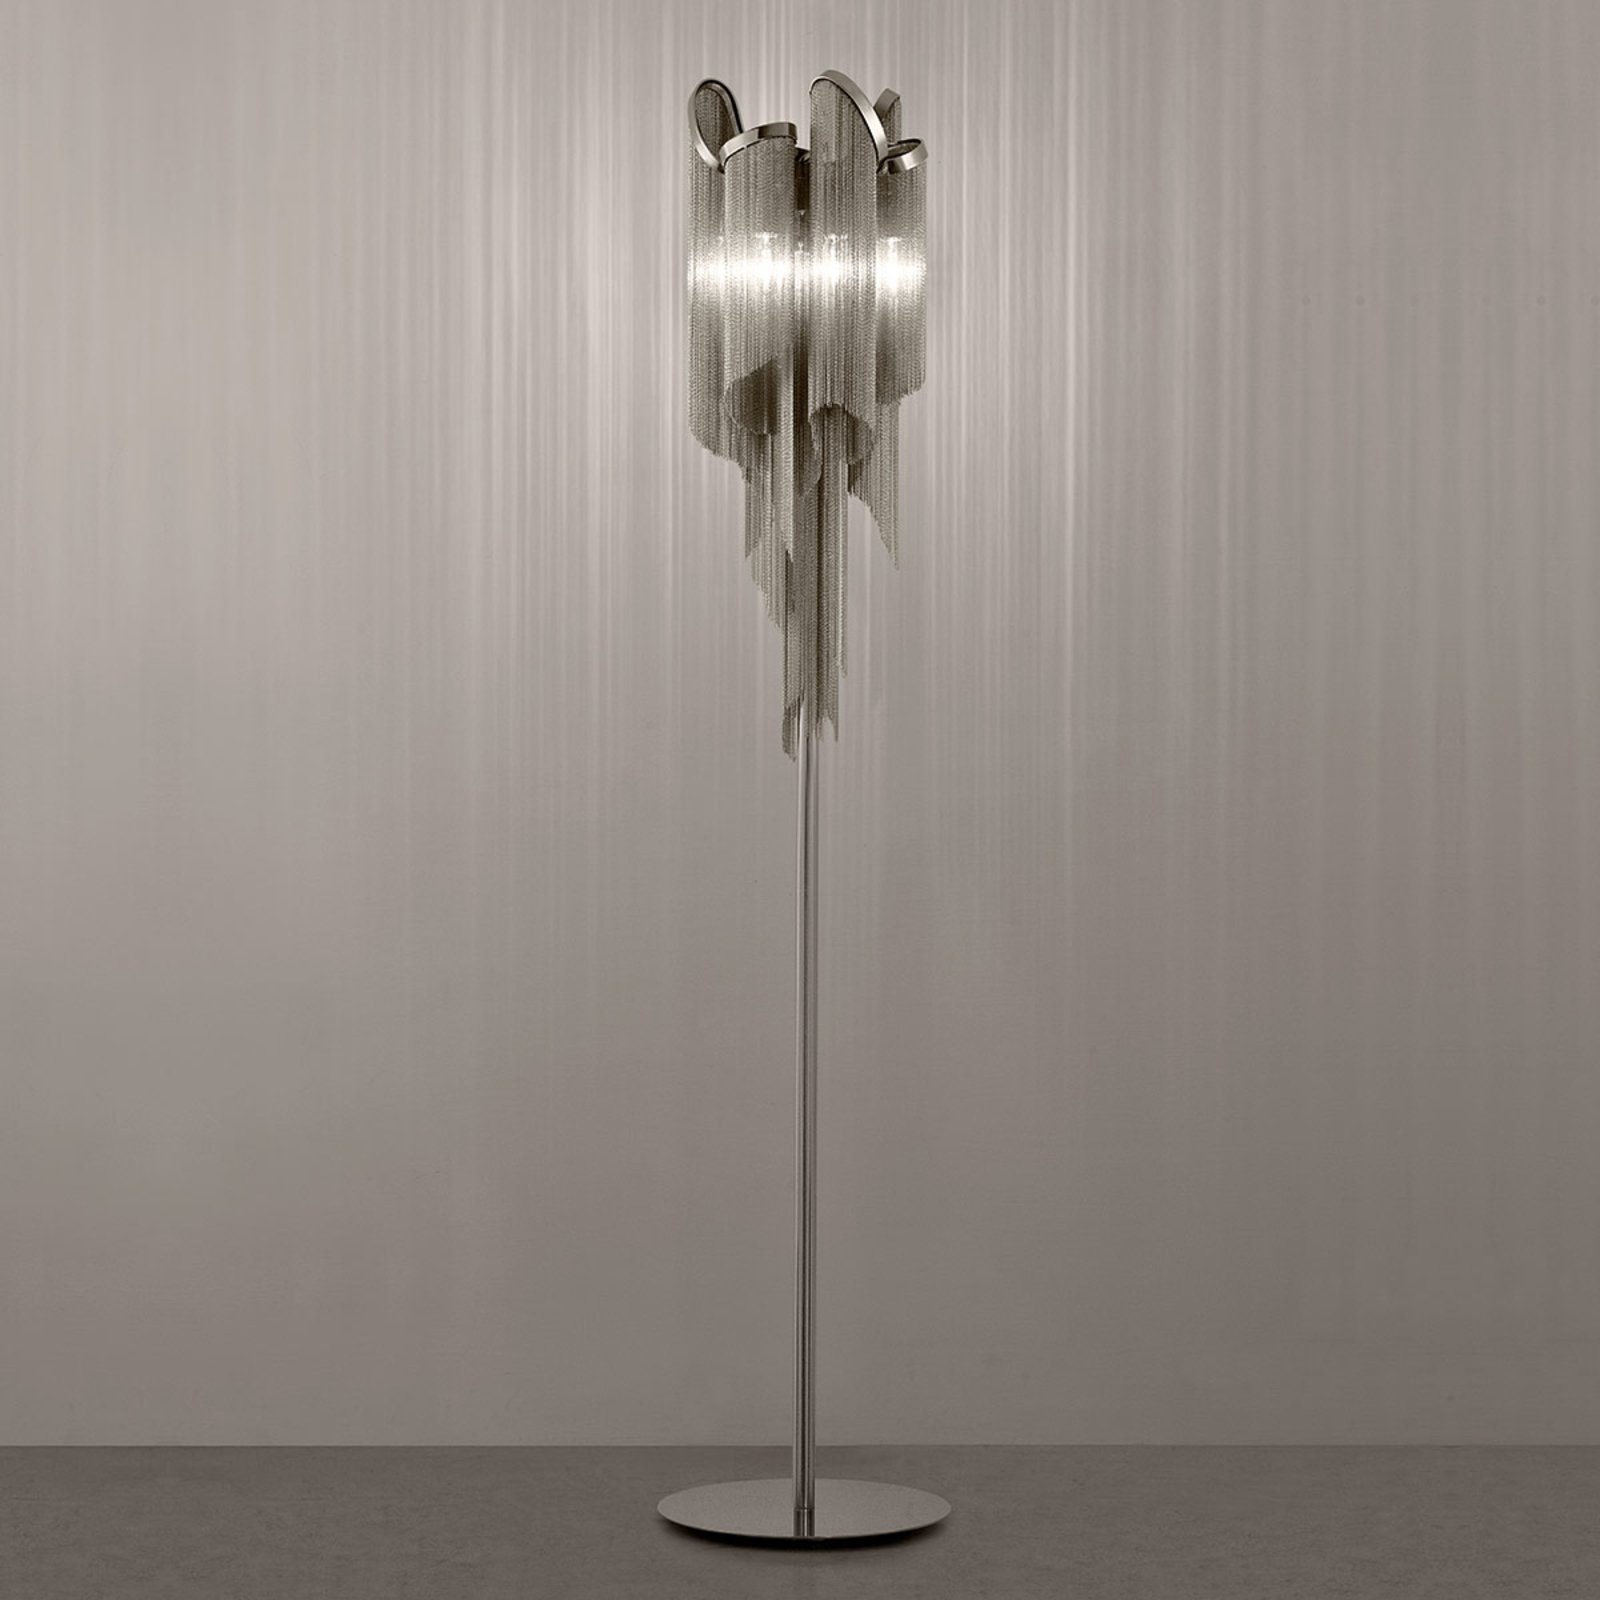 Terzani Stream - podna lampa, visina 175 cm